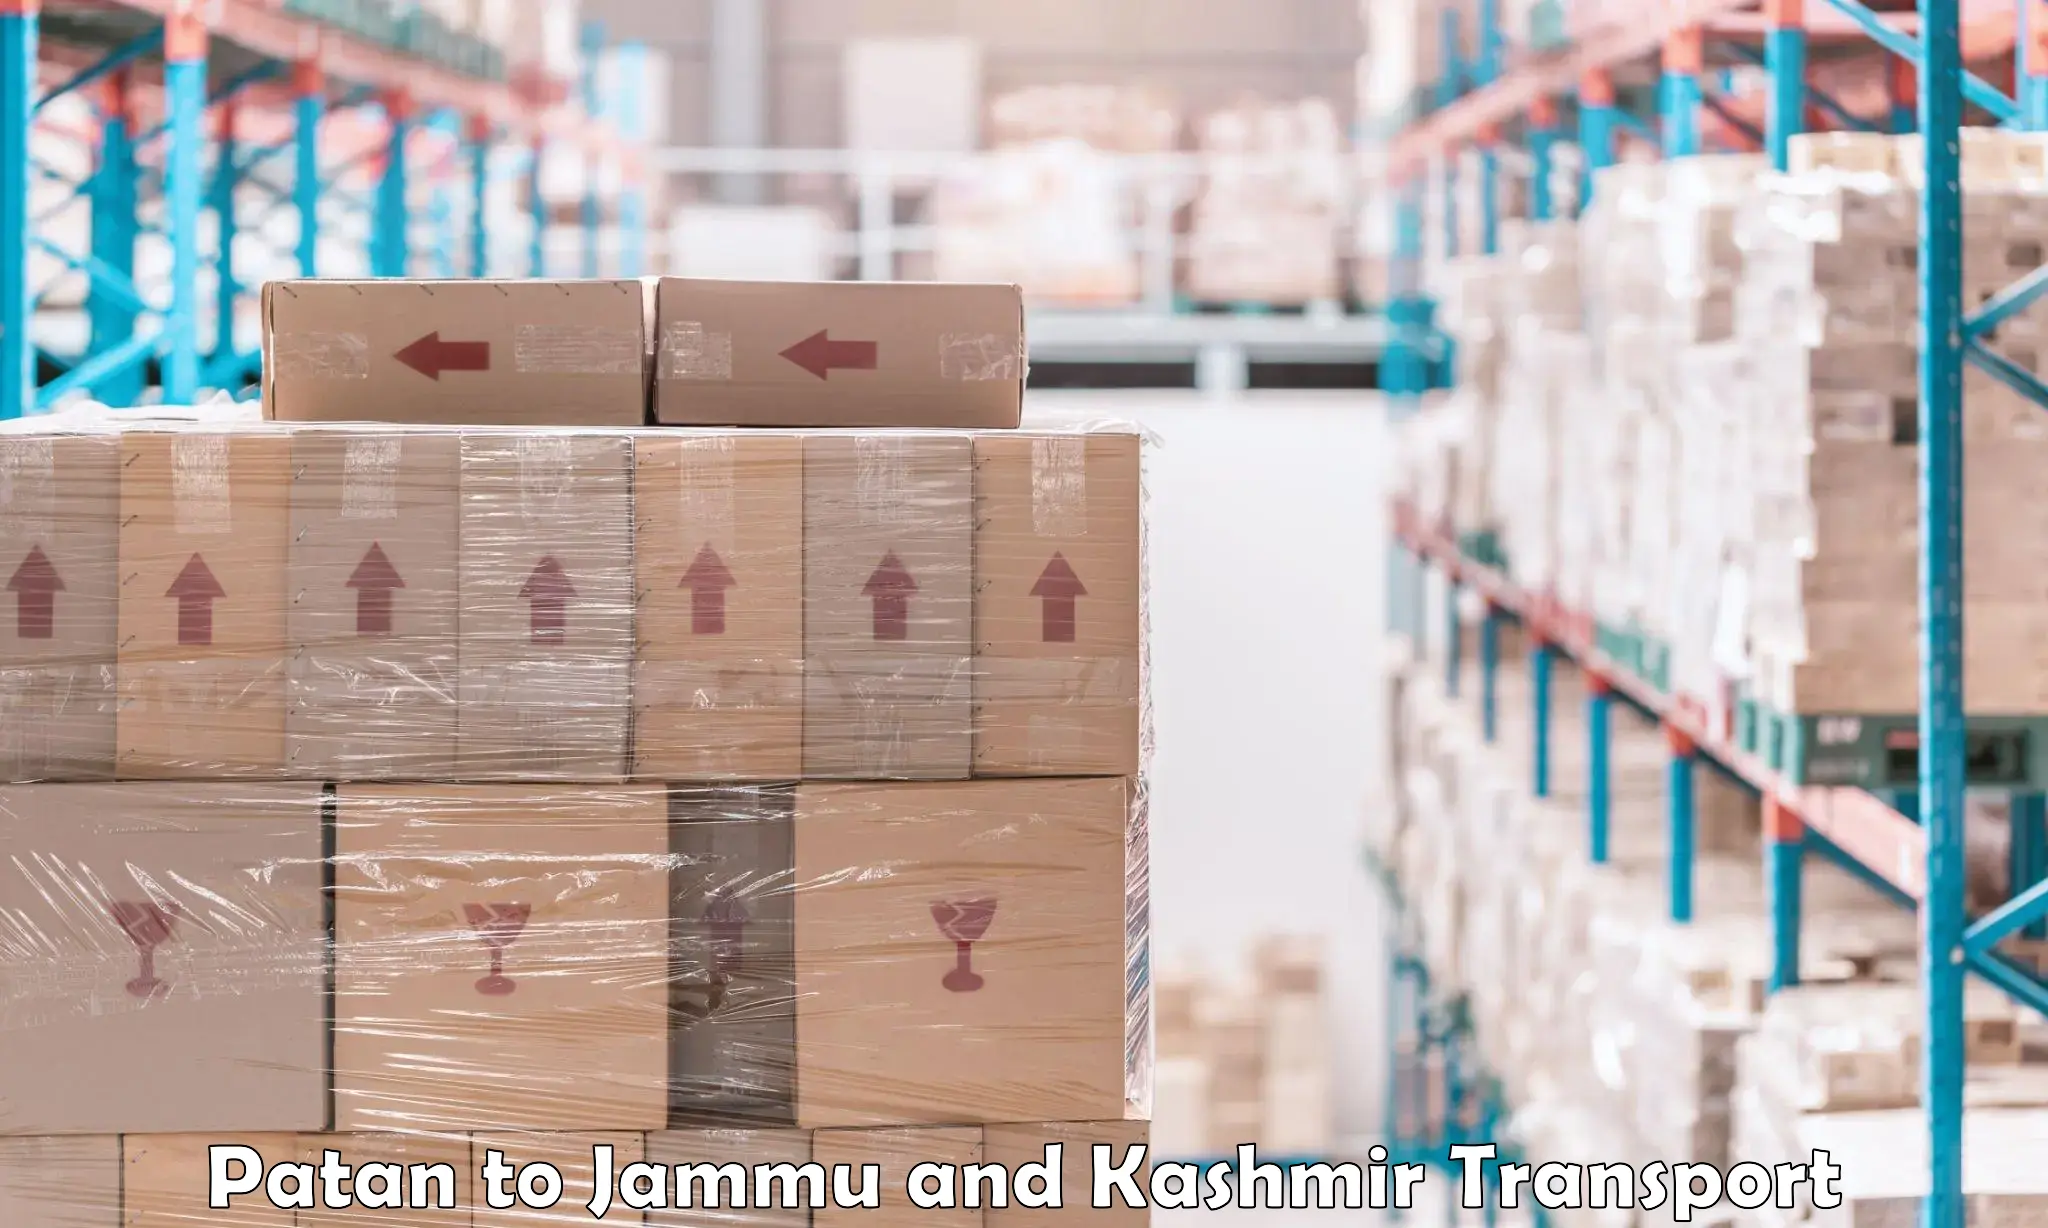 Cargo transportation services Patan to Jammu and Kashmir